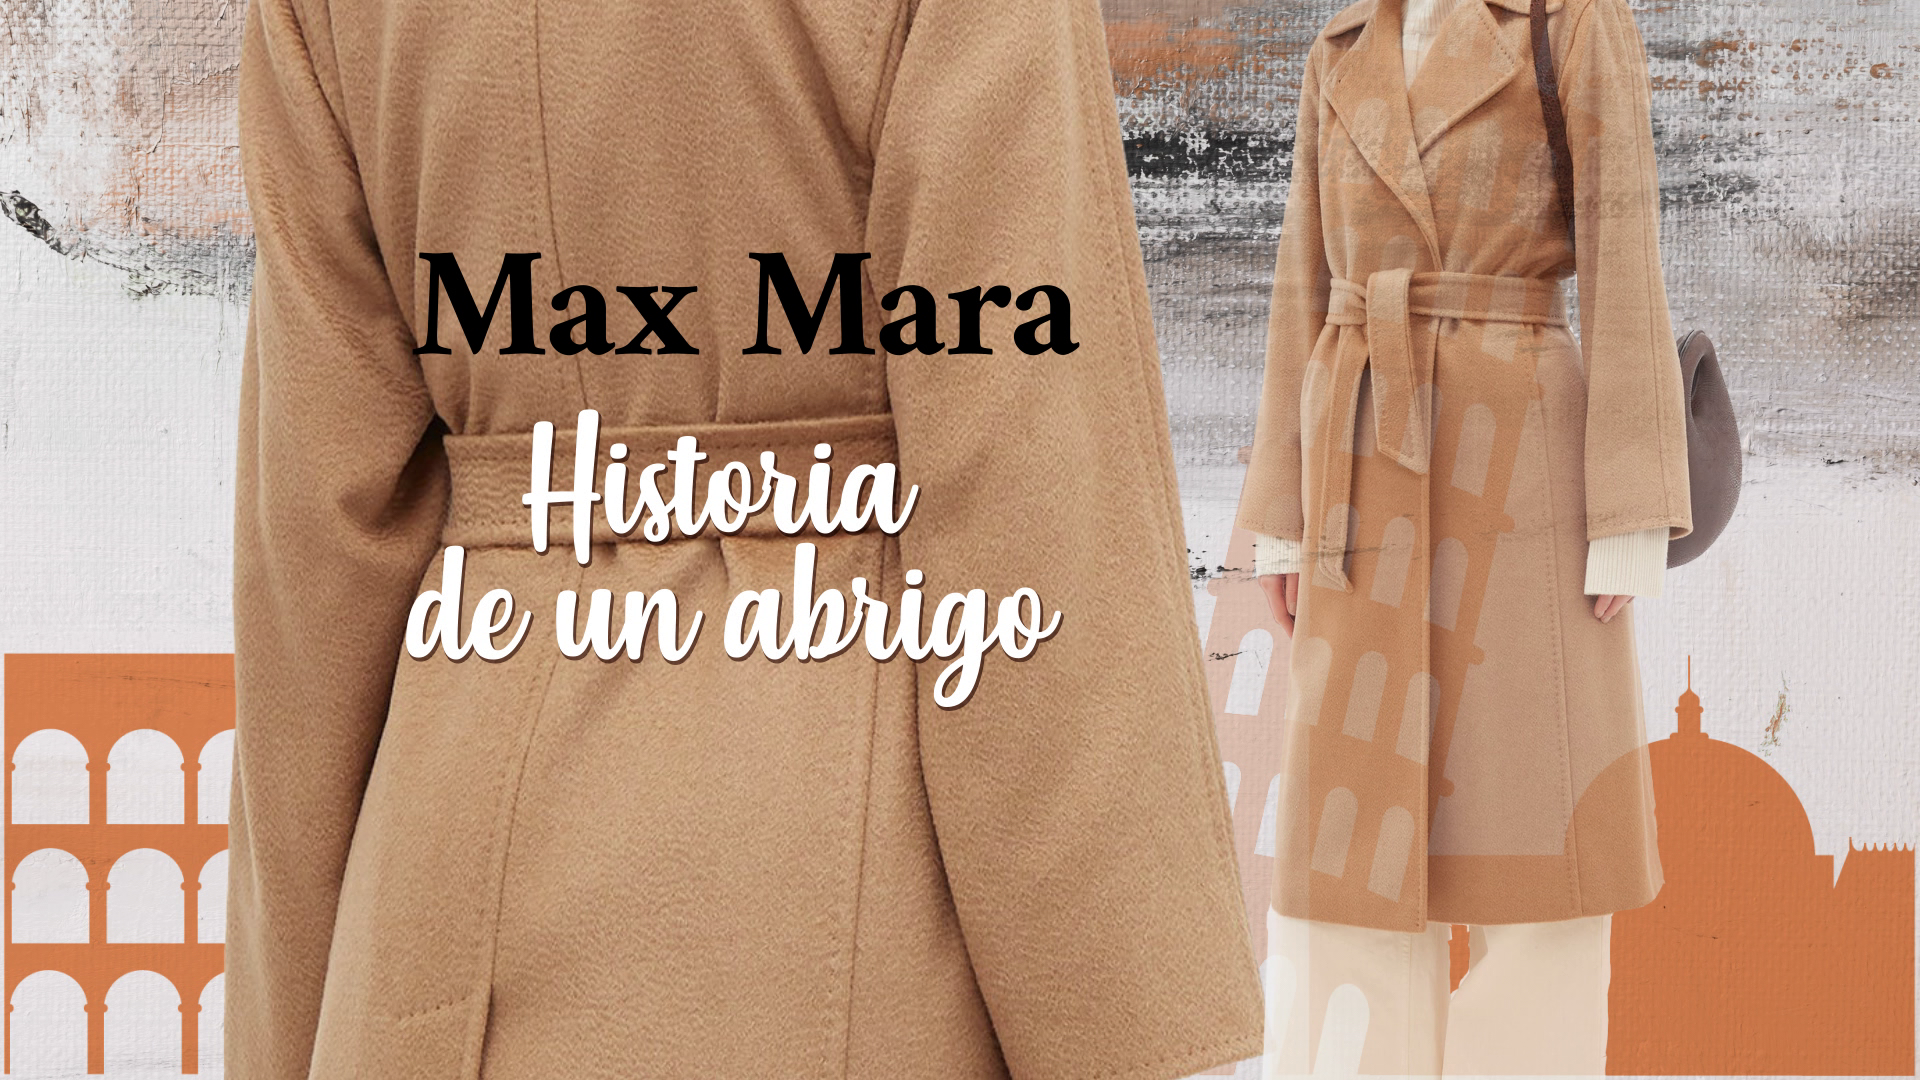 Flash - Max Mara, historia de un - RTVE.es